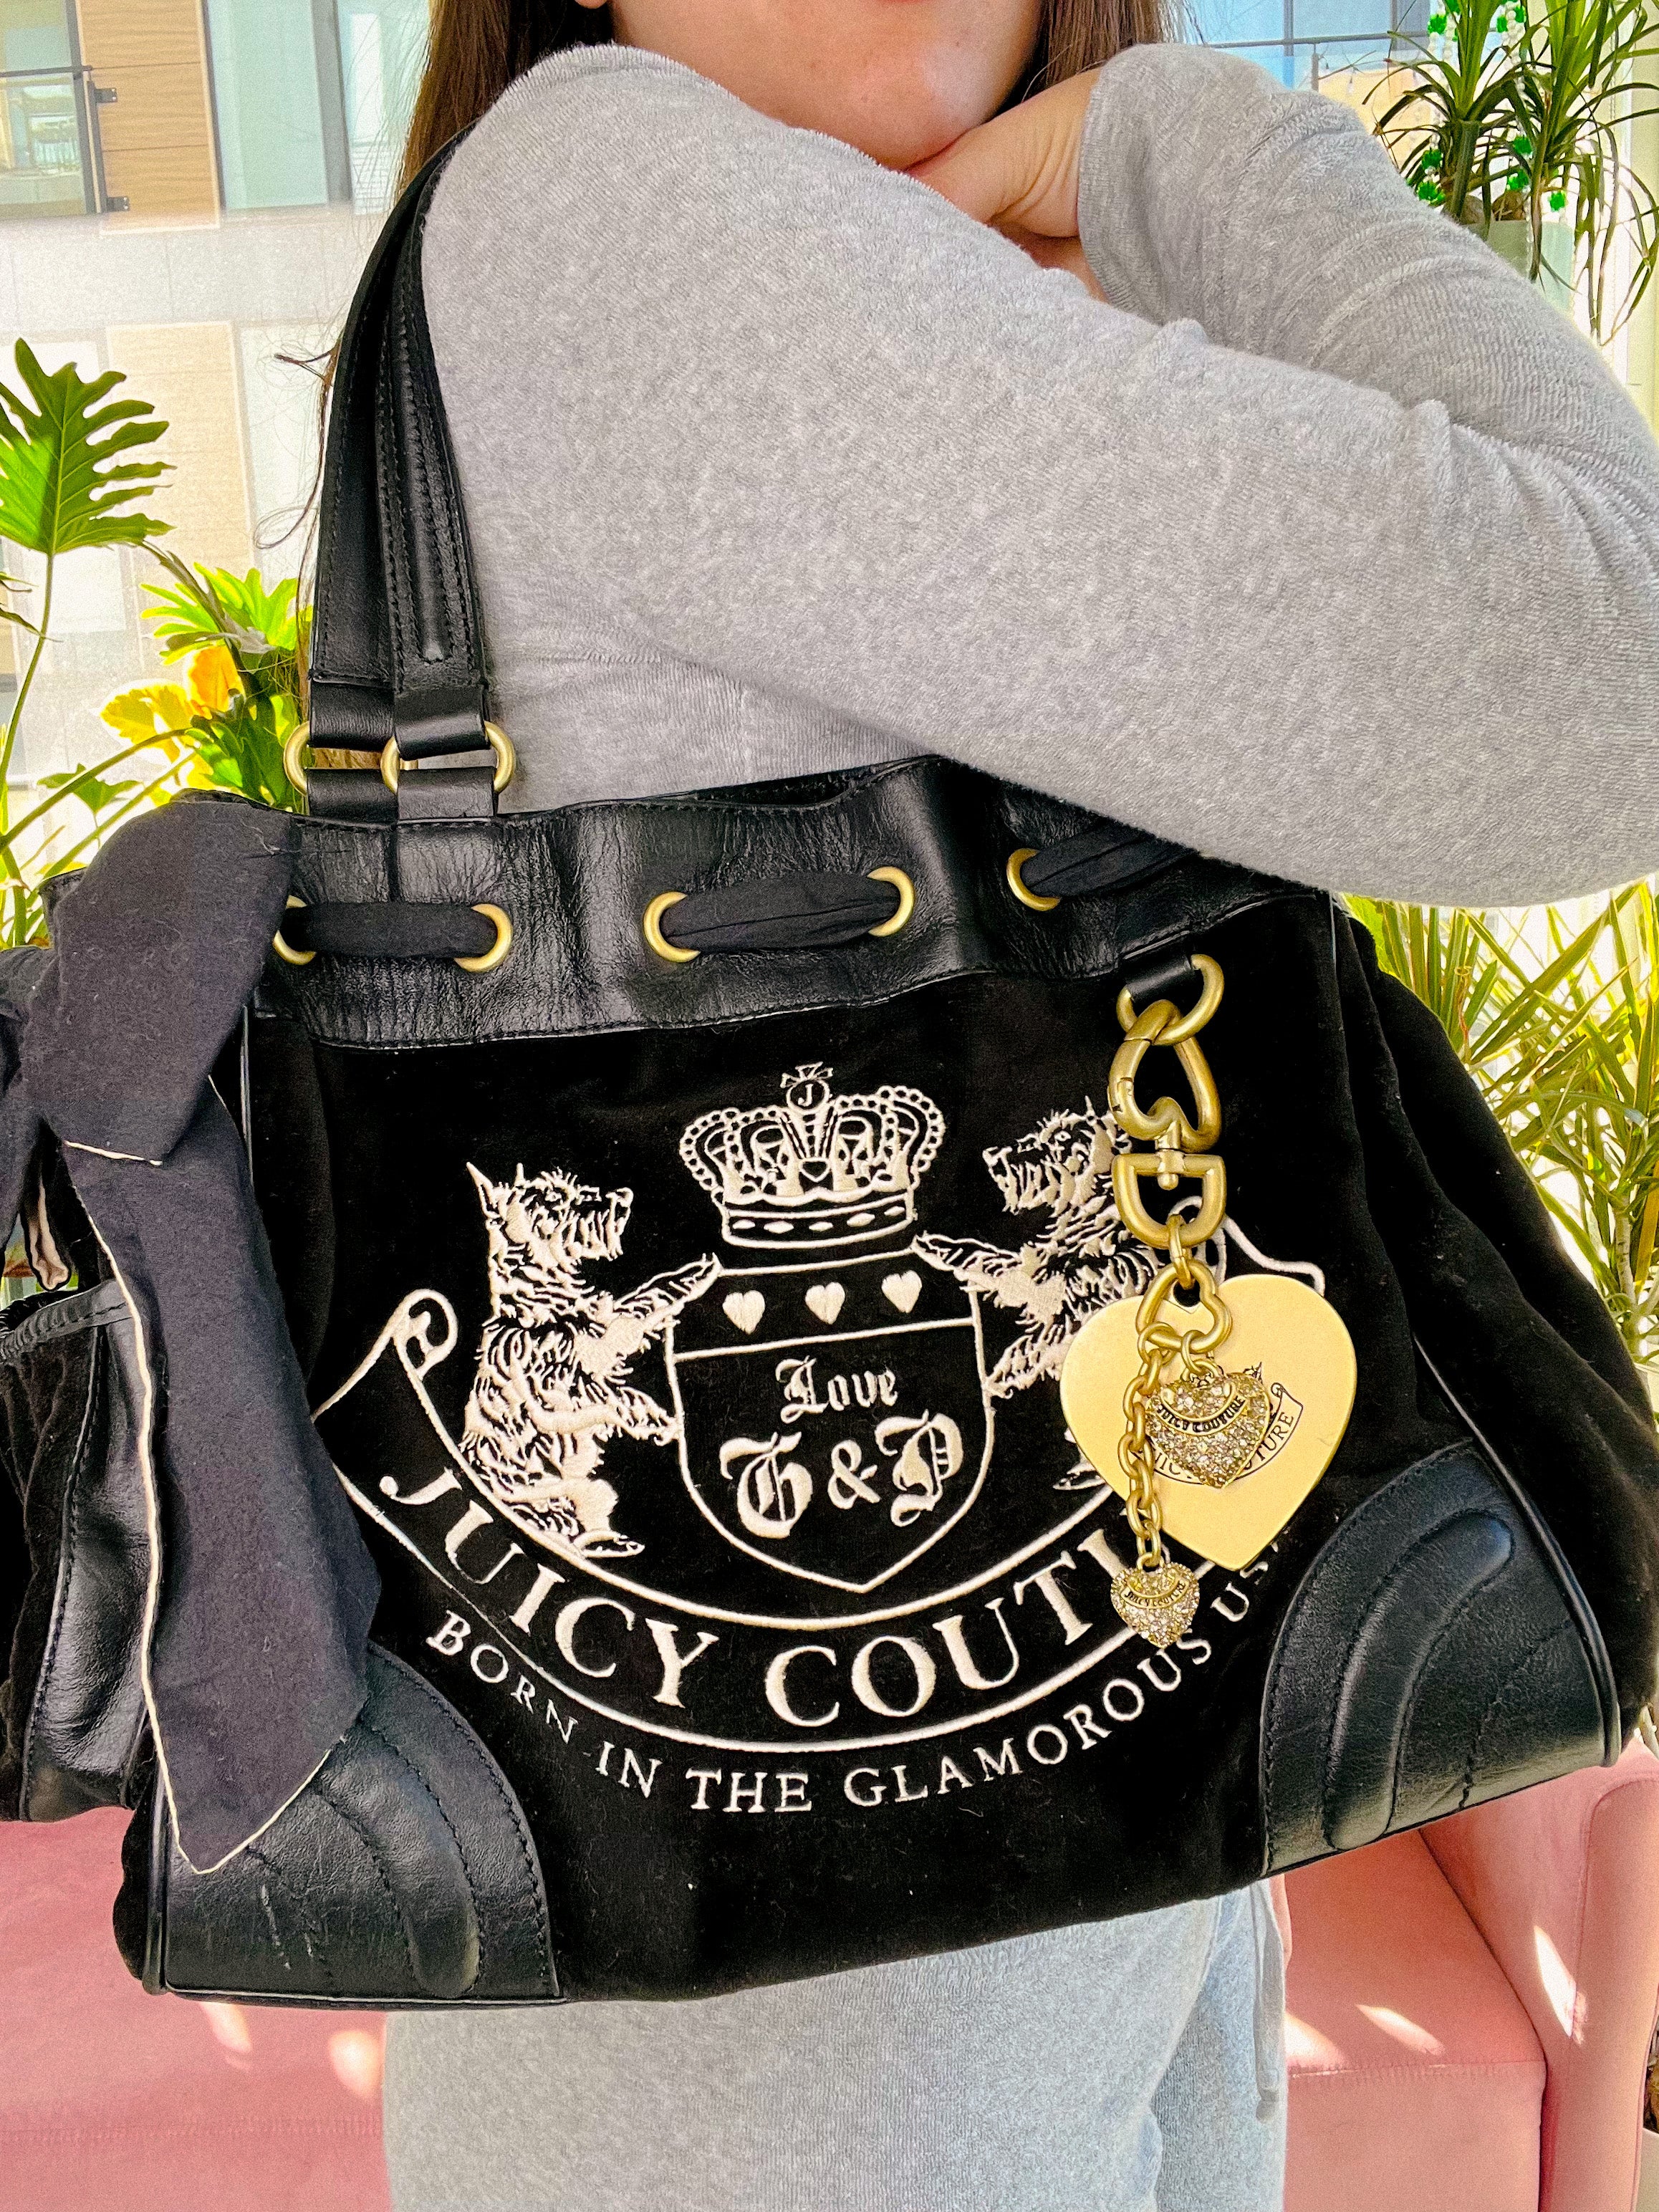 Vintage Black Juicy Couture Bag Y2K Grunge